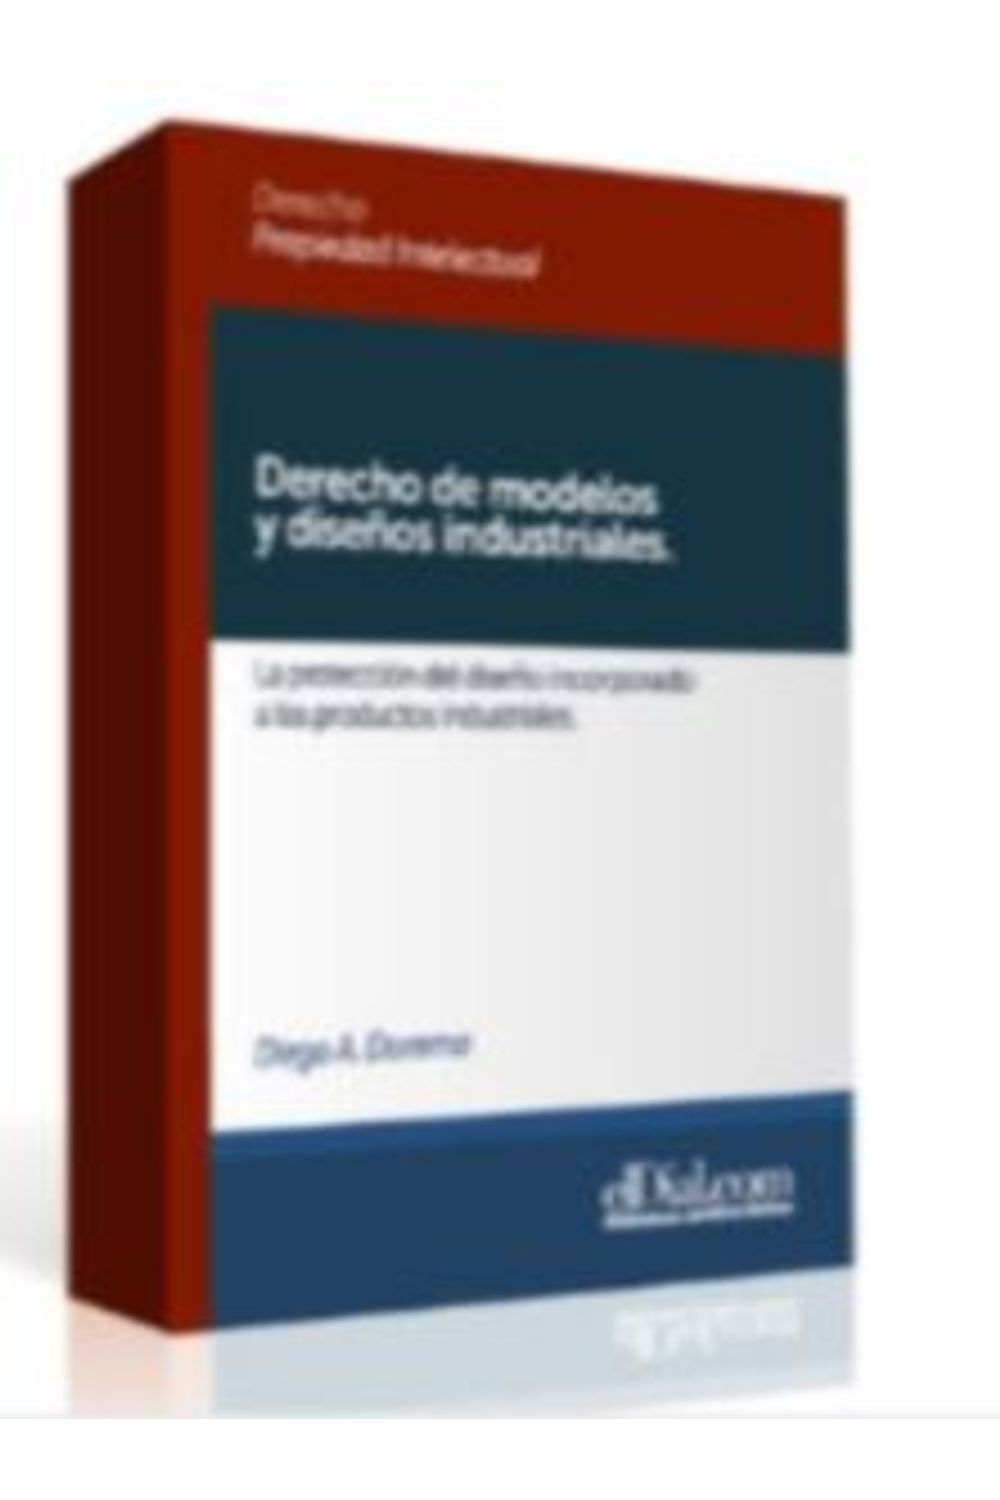 bm-derecho-de-modelos-y-disenos-industriales-editorial-albrematica-9789871799664